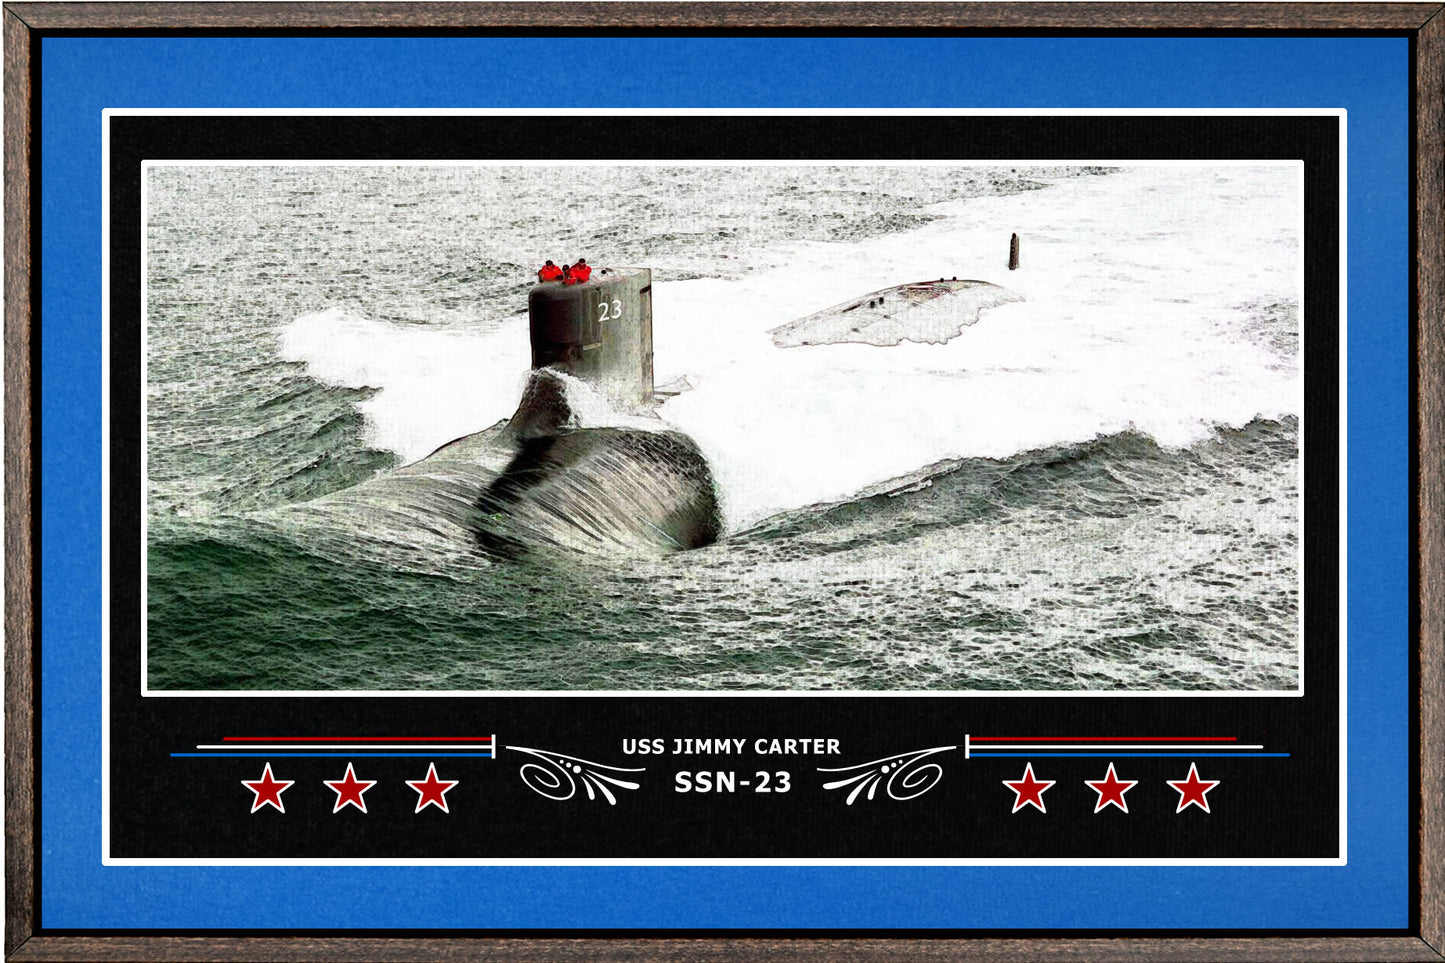 USS JIMMY CARTER SSN 23 BOX FRAMED CANVAS ART BLUE